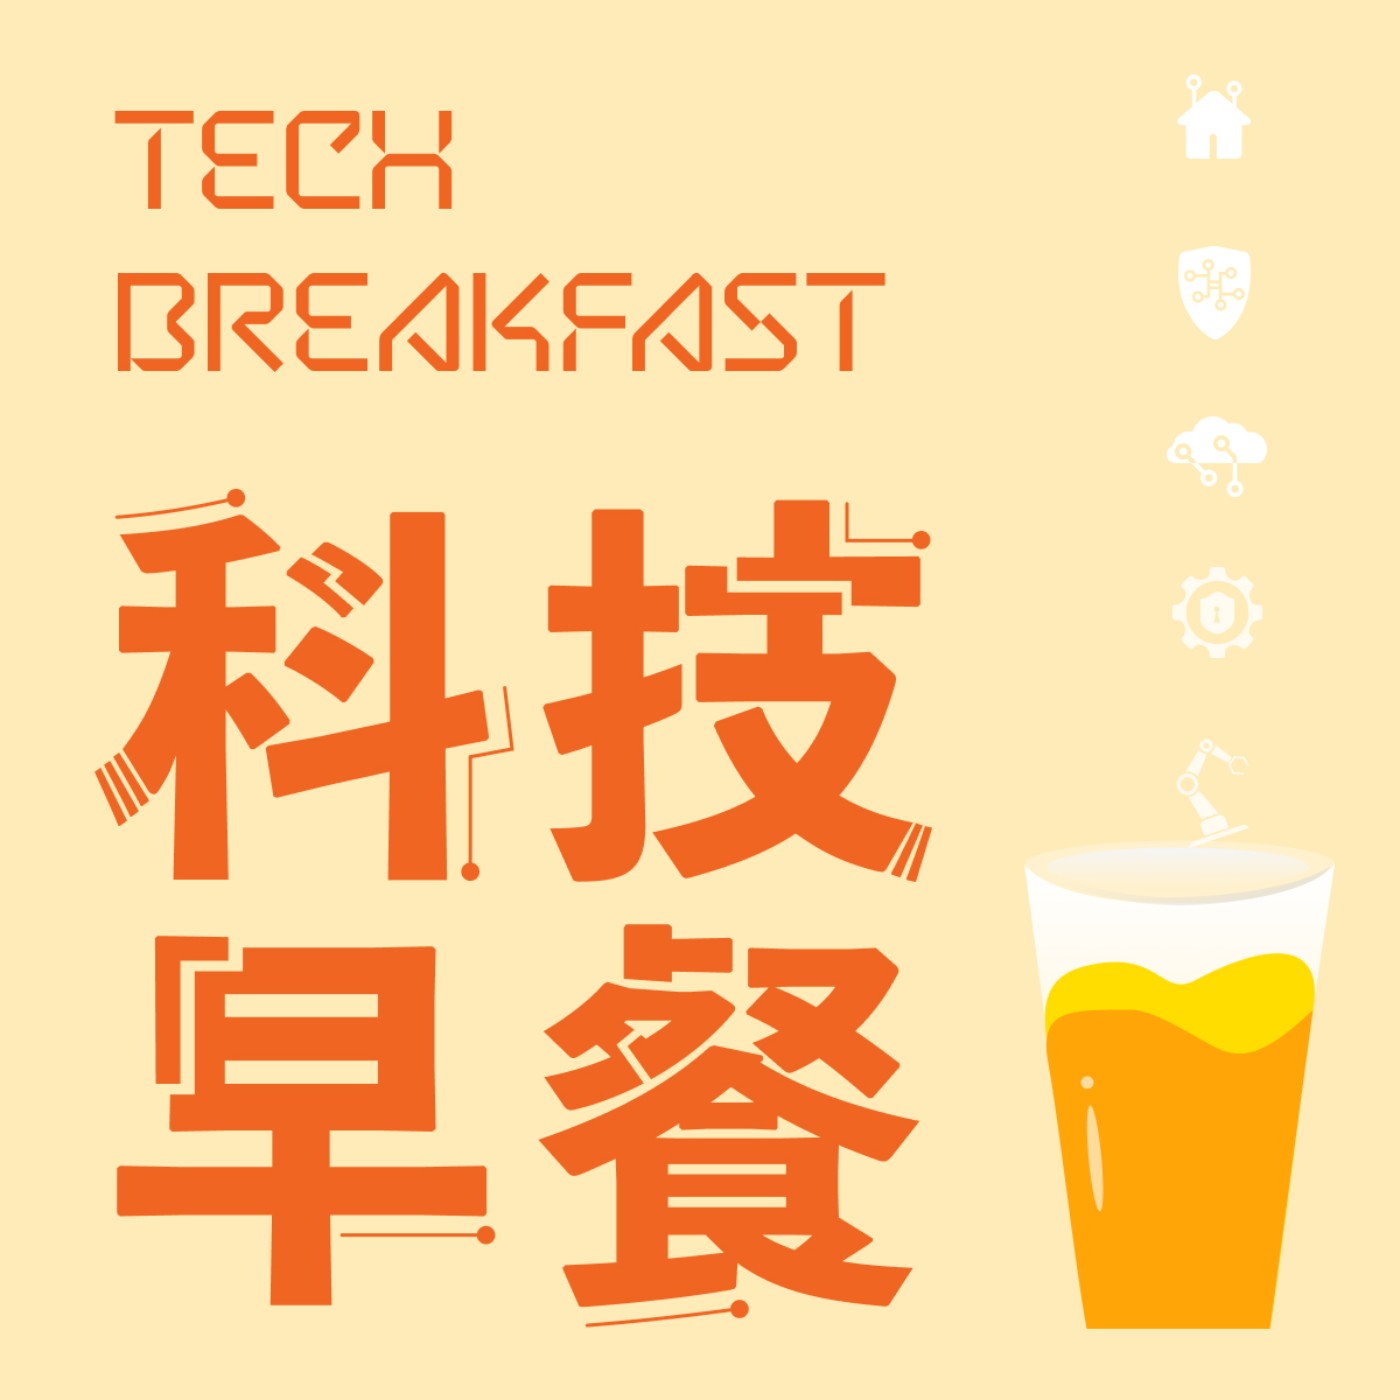 科技早餐 04/30｜馬斯克訪北京，中國汽車工業協會即宣布特斯拉符合安全規定